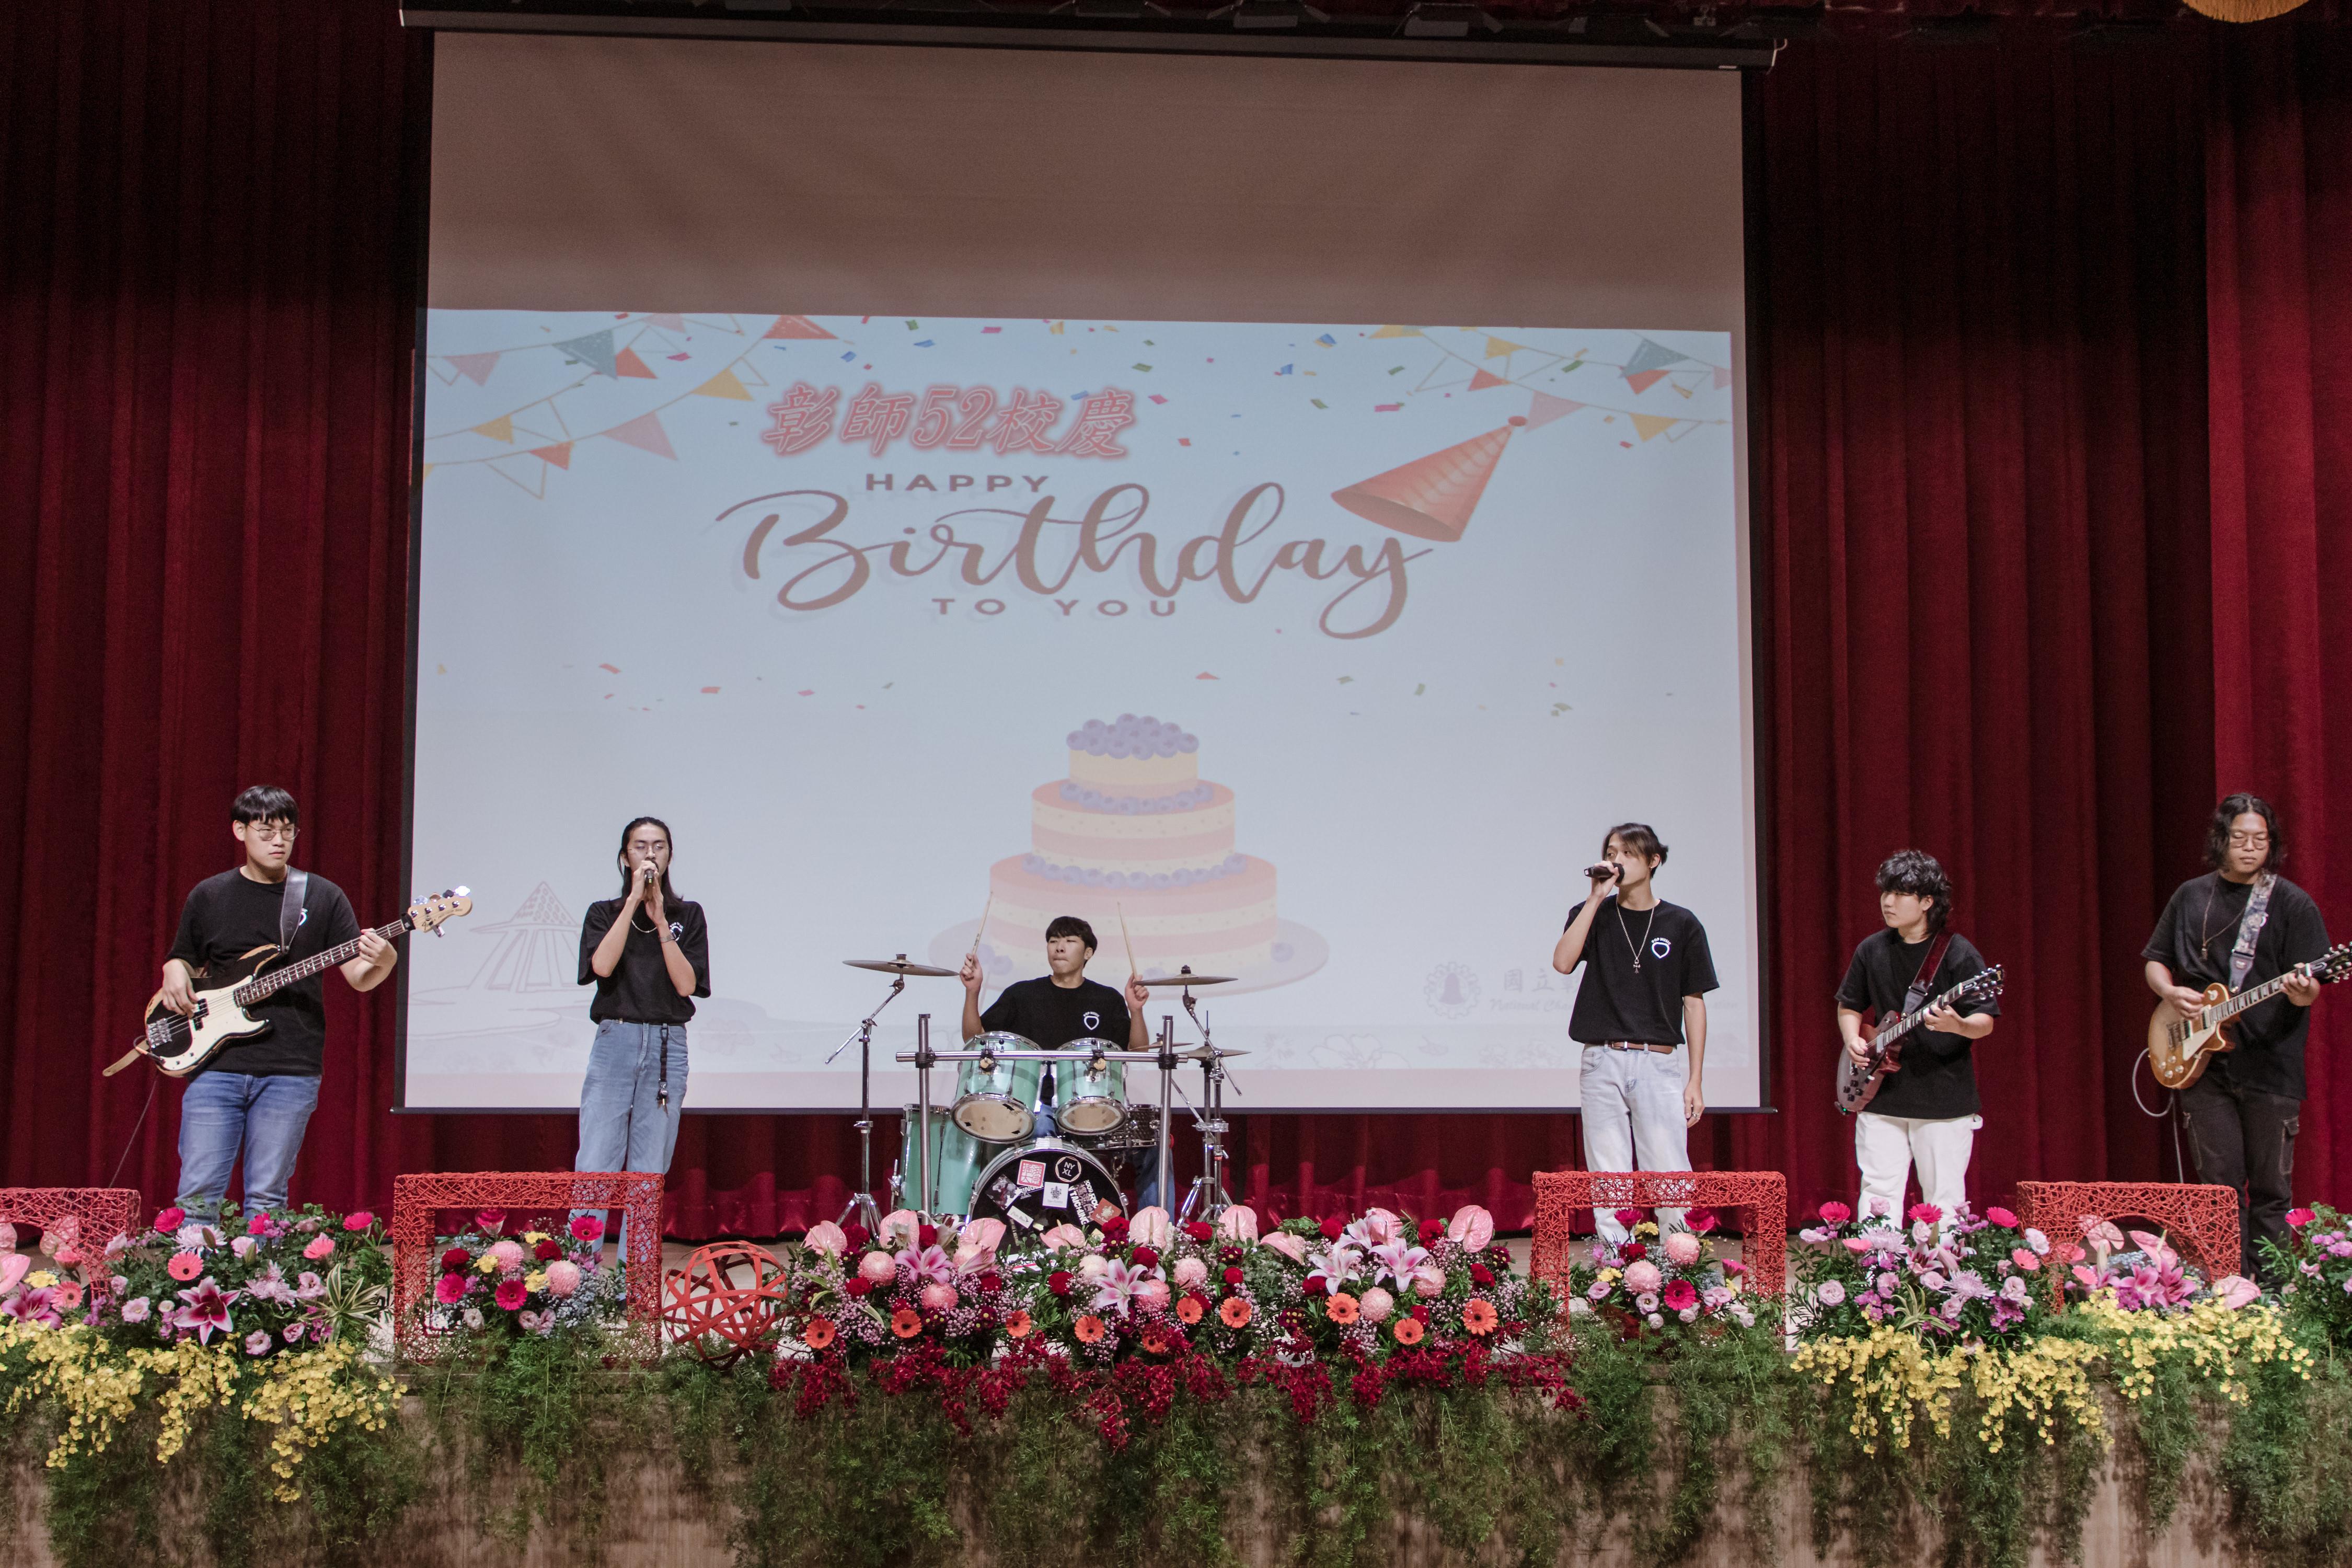 熱音社獻唱生日快樂歌，祝福彰化師大52週年生日快樂。